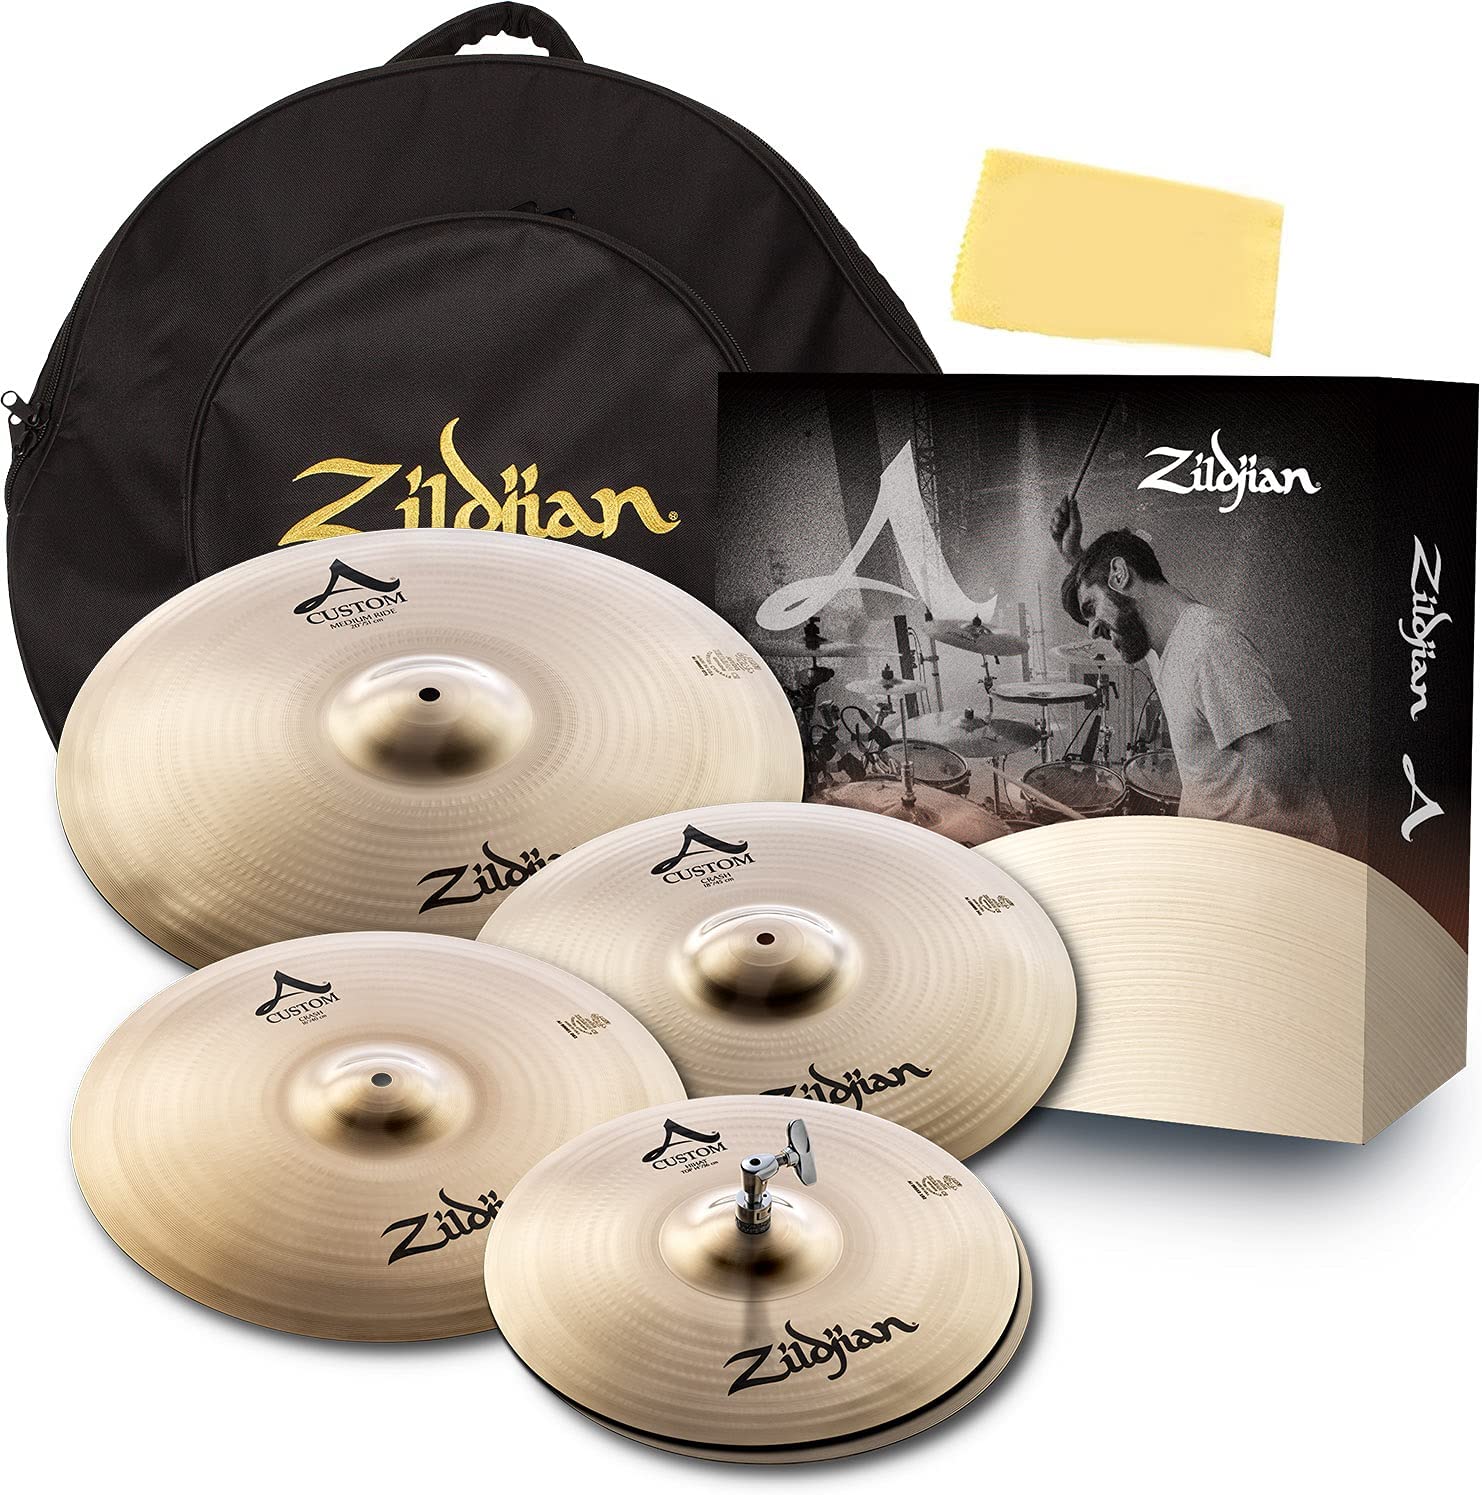 Zildjian A Custom set